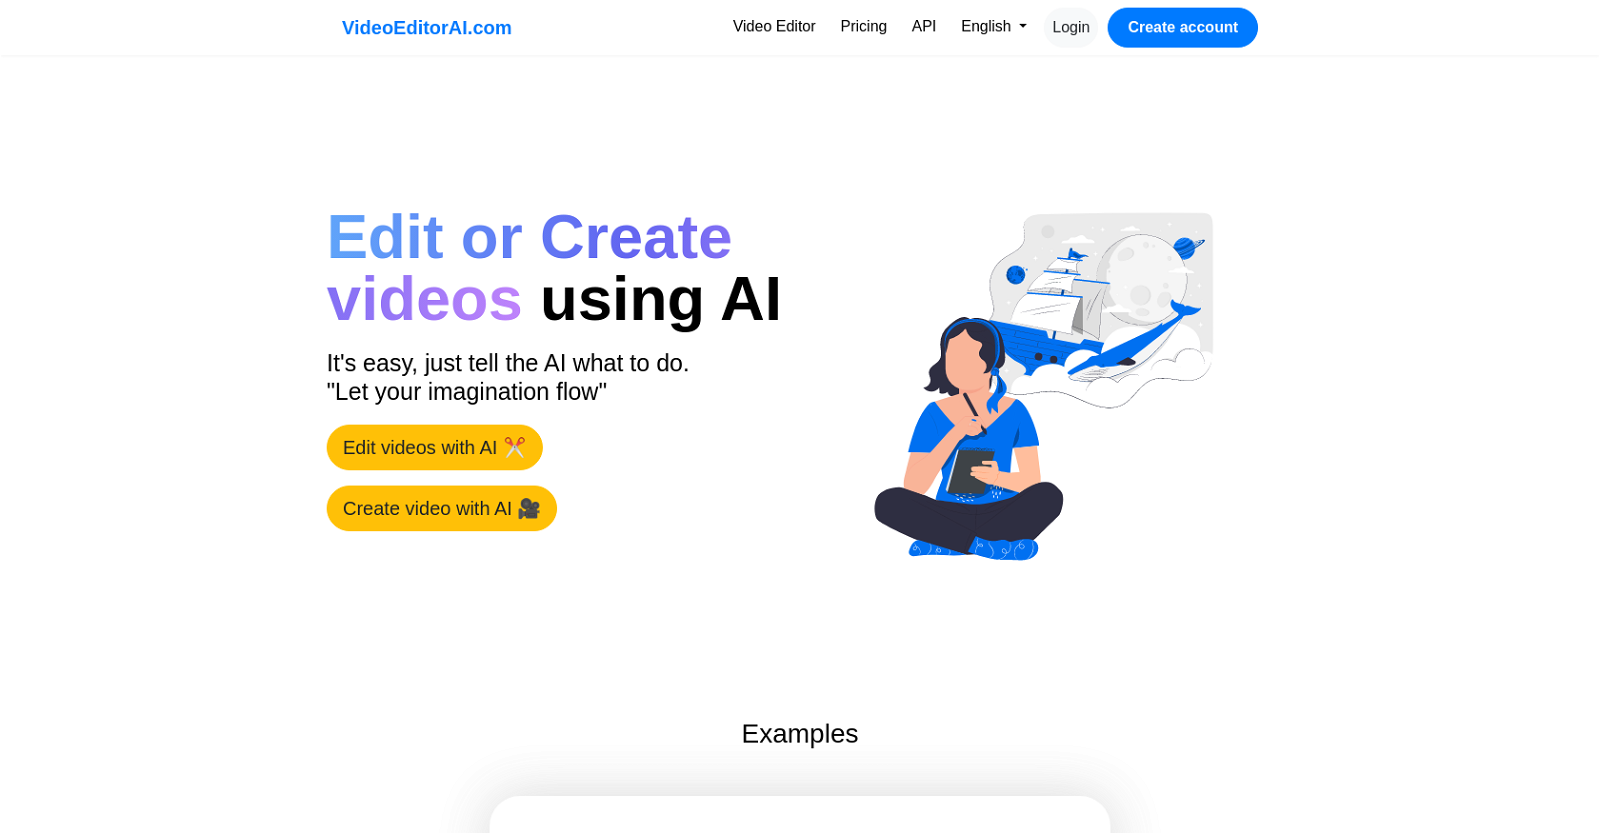 Video Editor AI website